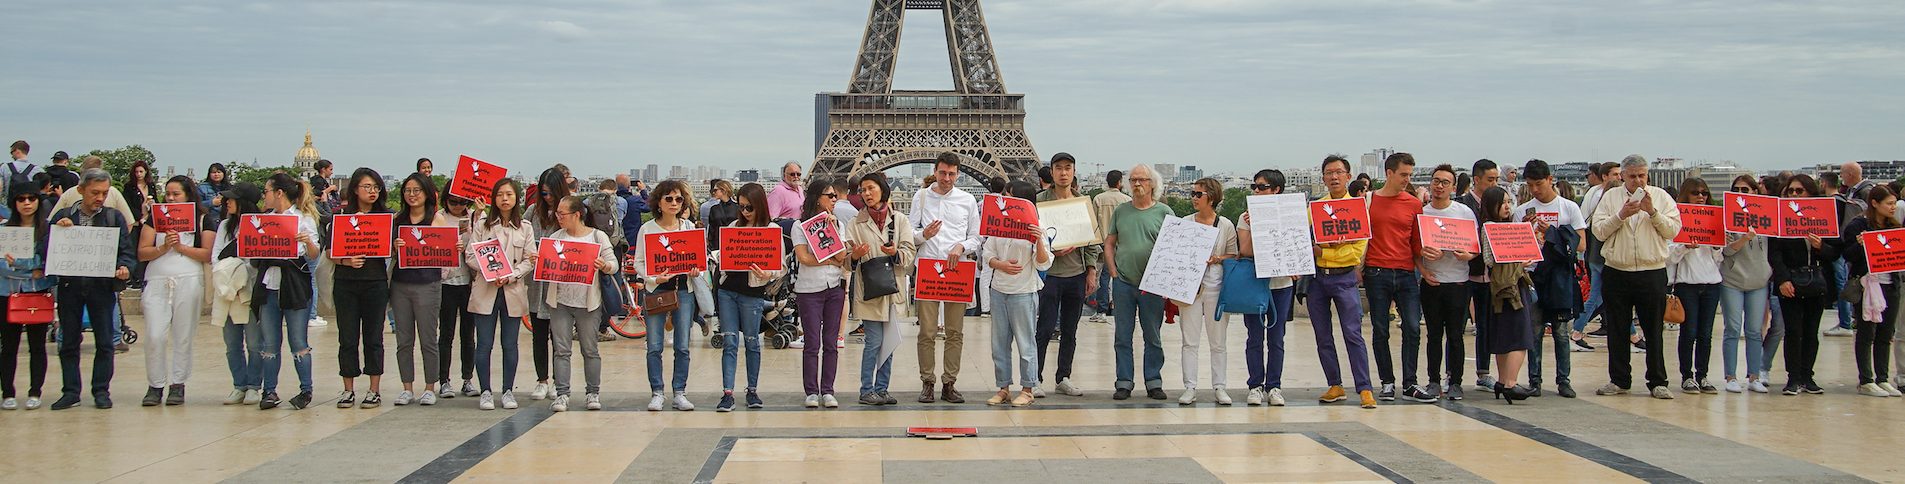 Rassemblement de Hongkongais contre le projet de loi d'extradition vers la Chine, place du Trocadéro à Paris, en juin 2019. (Crédit : Quang Pham)